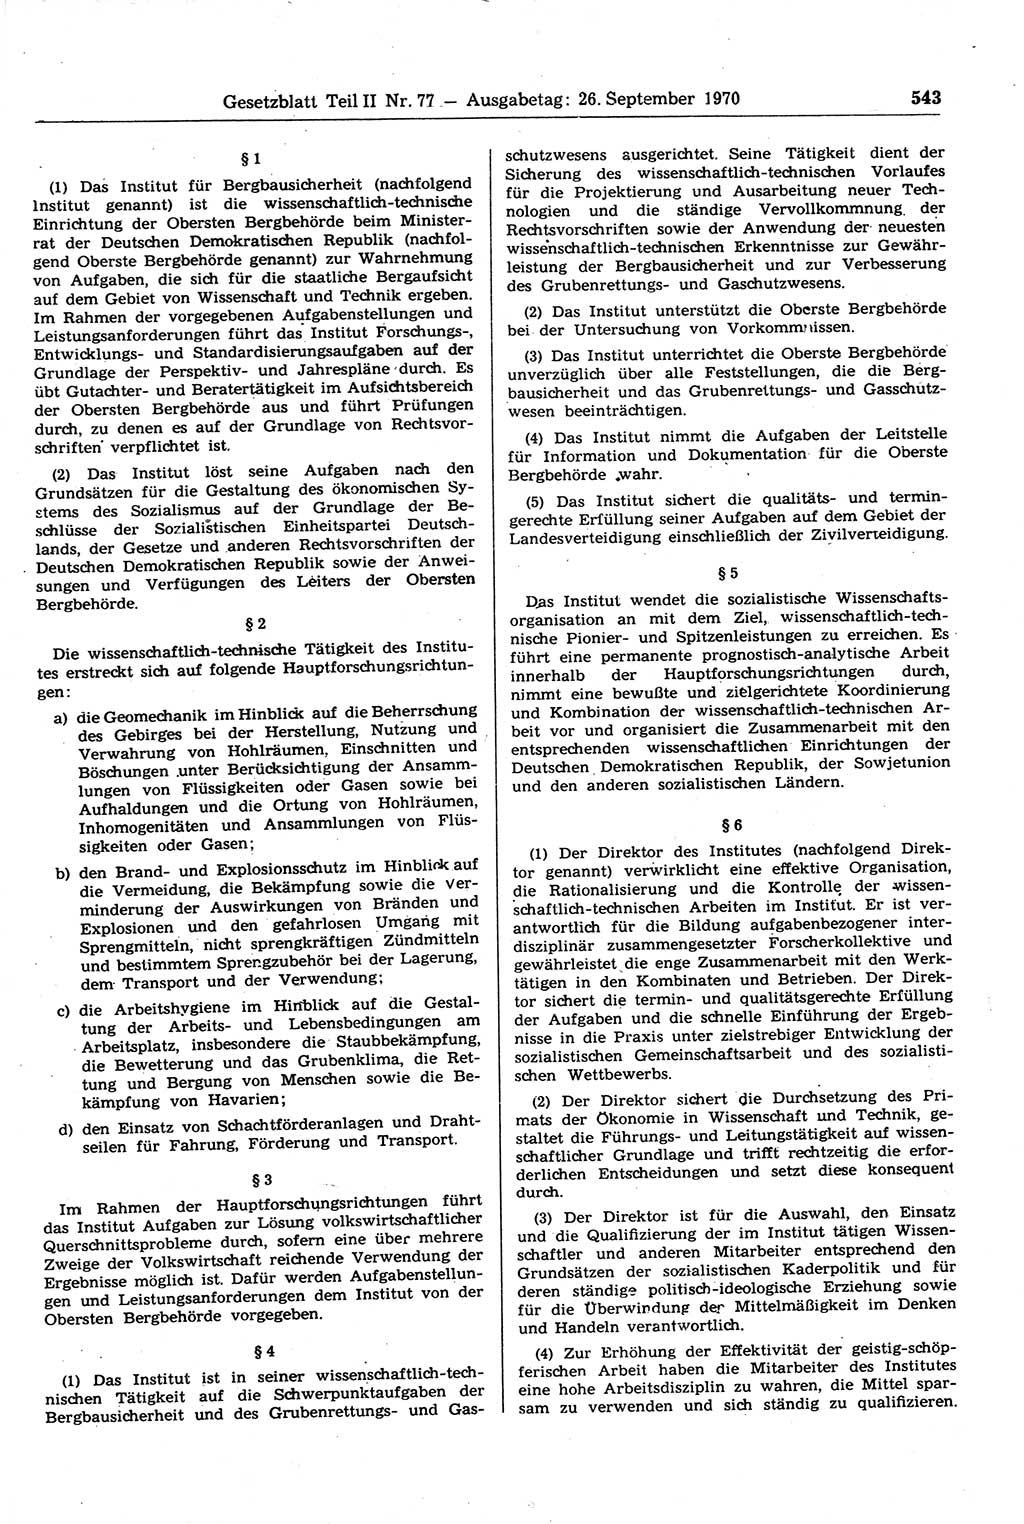 Gesetzblatt (GBl.) der Deutschen Demokratischen Republik (DDR) Teil ⅠⅠ 1970, Seite 543 (GBl. DDR ⅠⅠ 1970, S. 543)